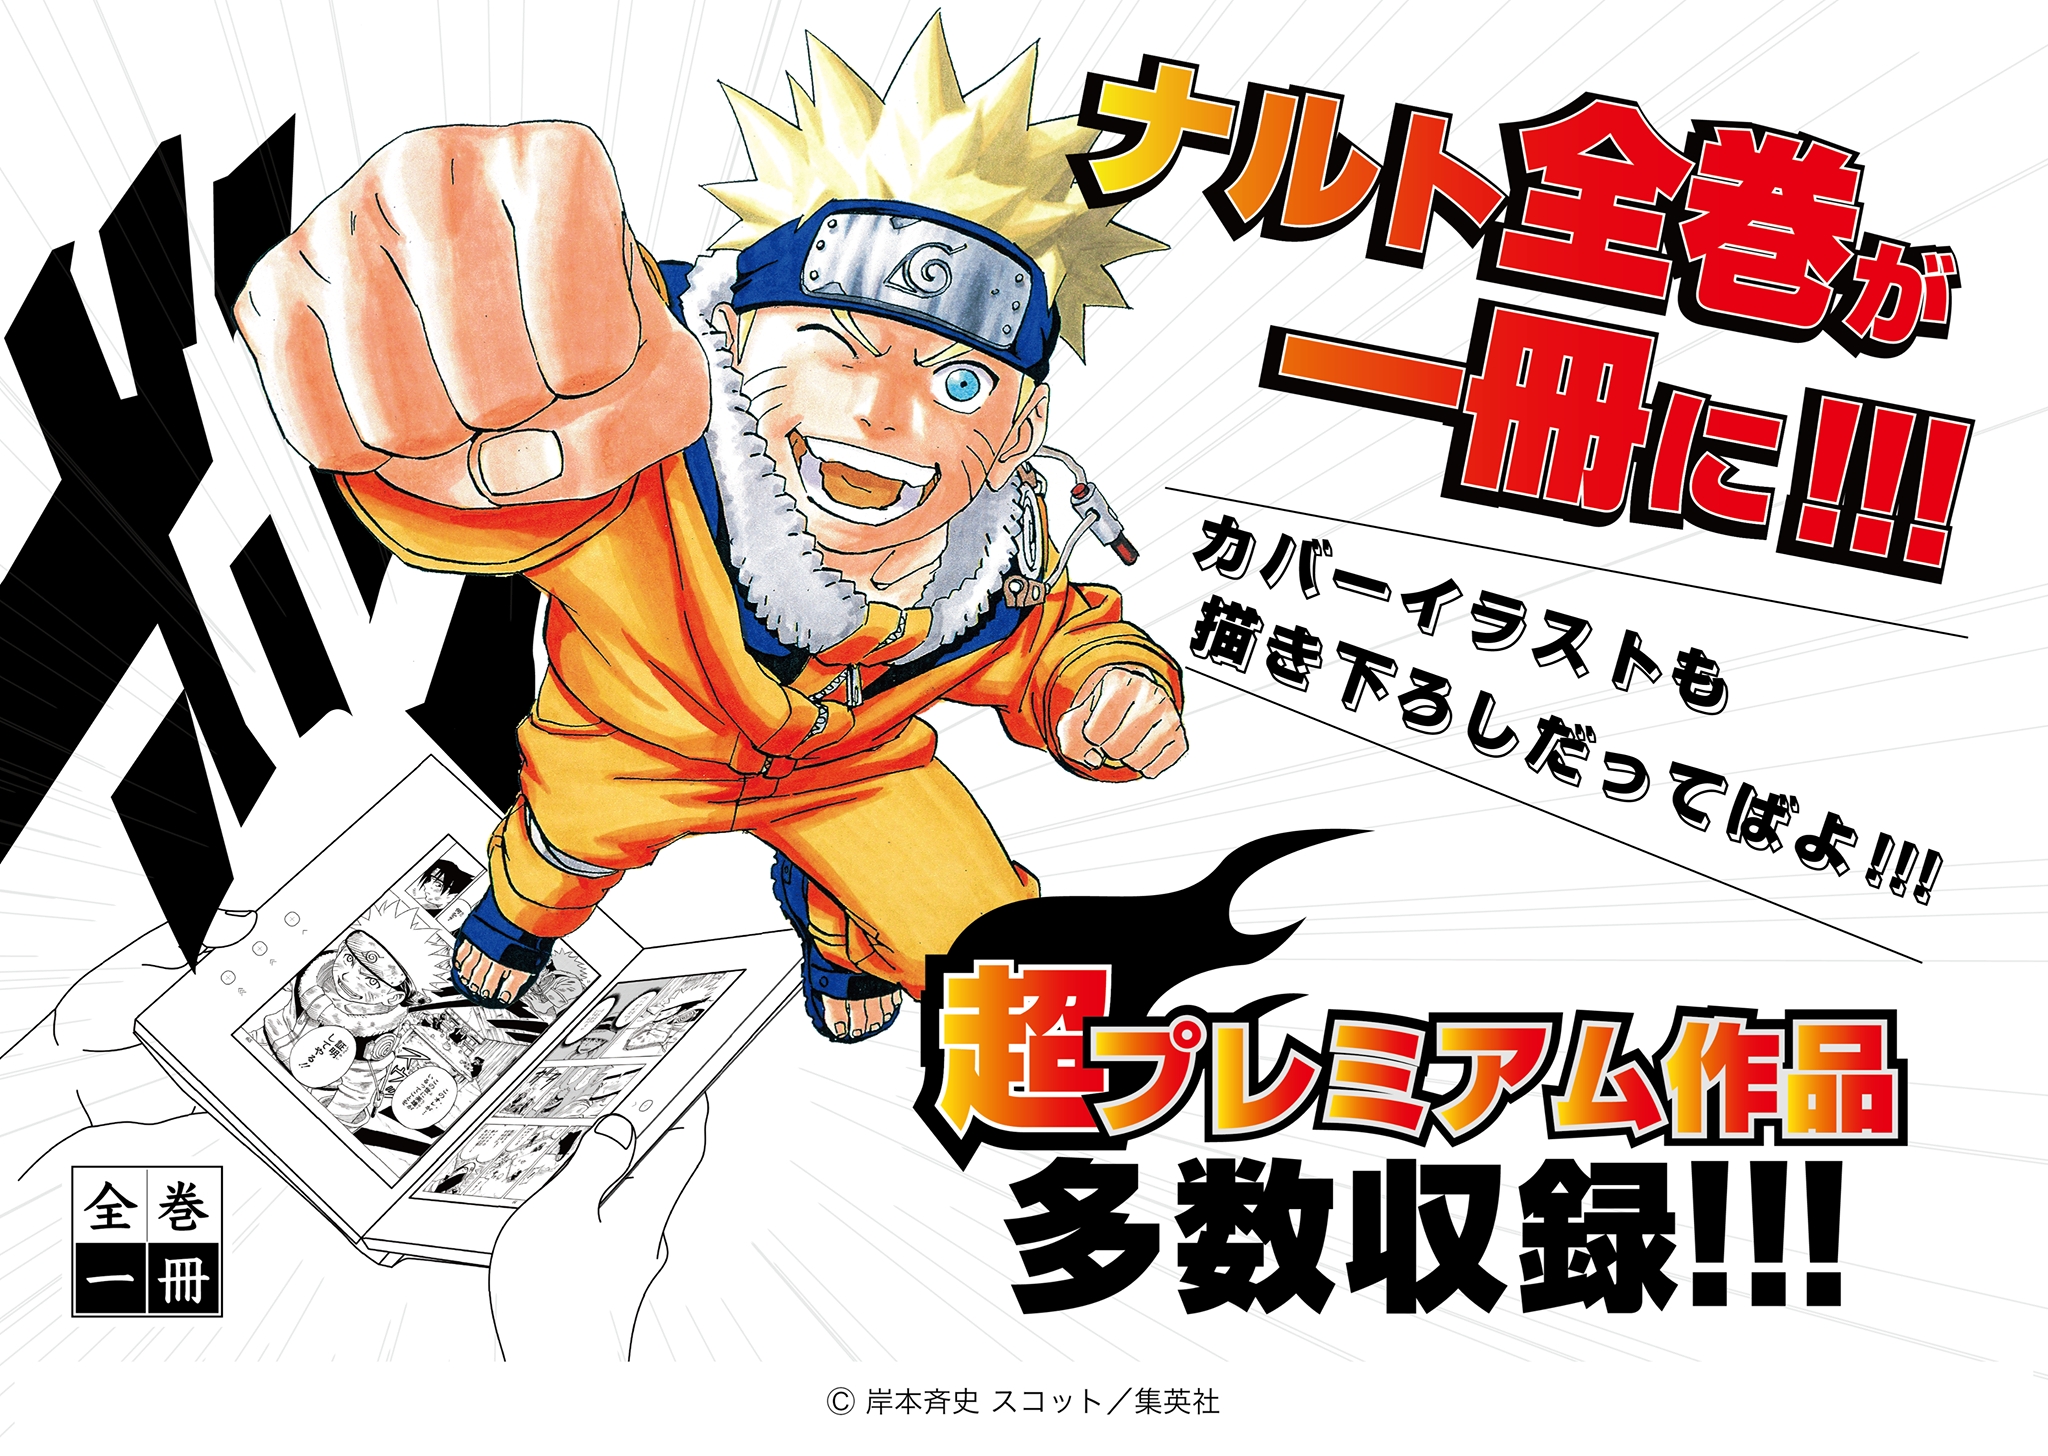 大好評 全巻一冊シリーズに Naruto ナルト 描き下ろしカバー プレミアム作品も収録 Ccc 蔦屋書店カンパニーのプレスリリース